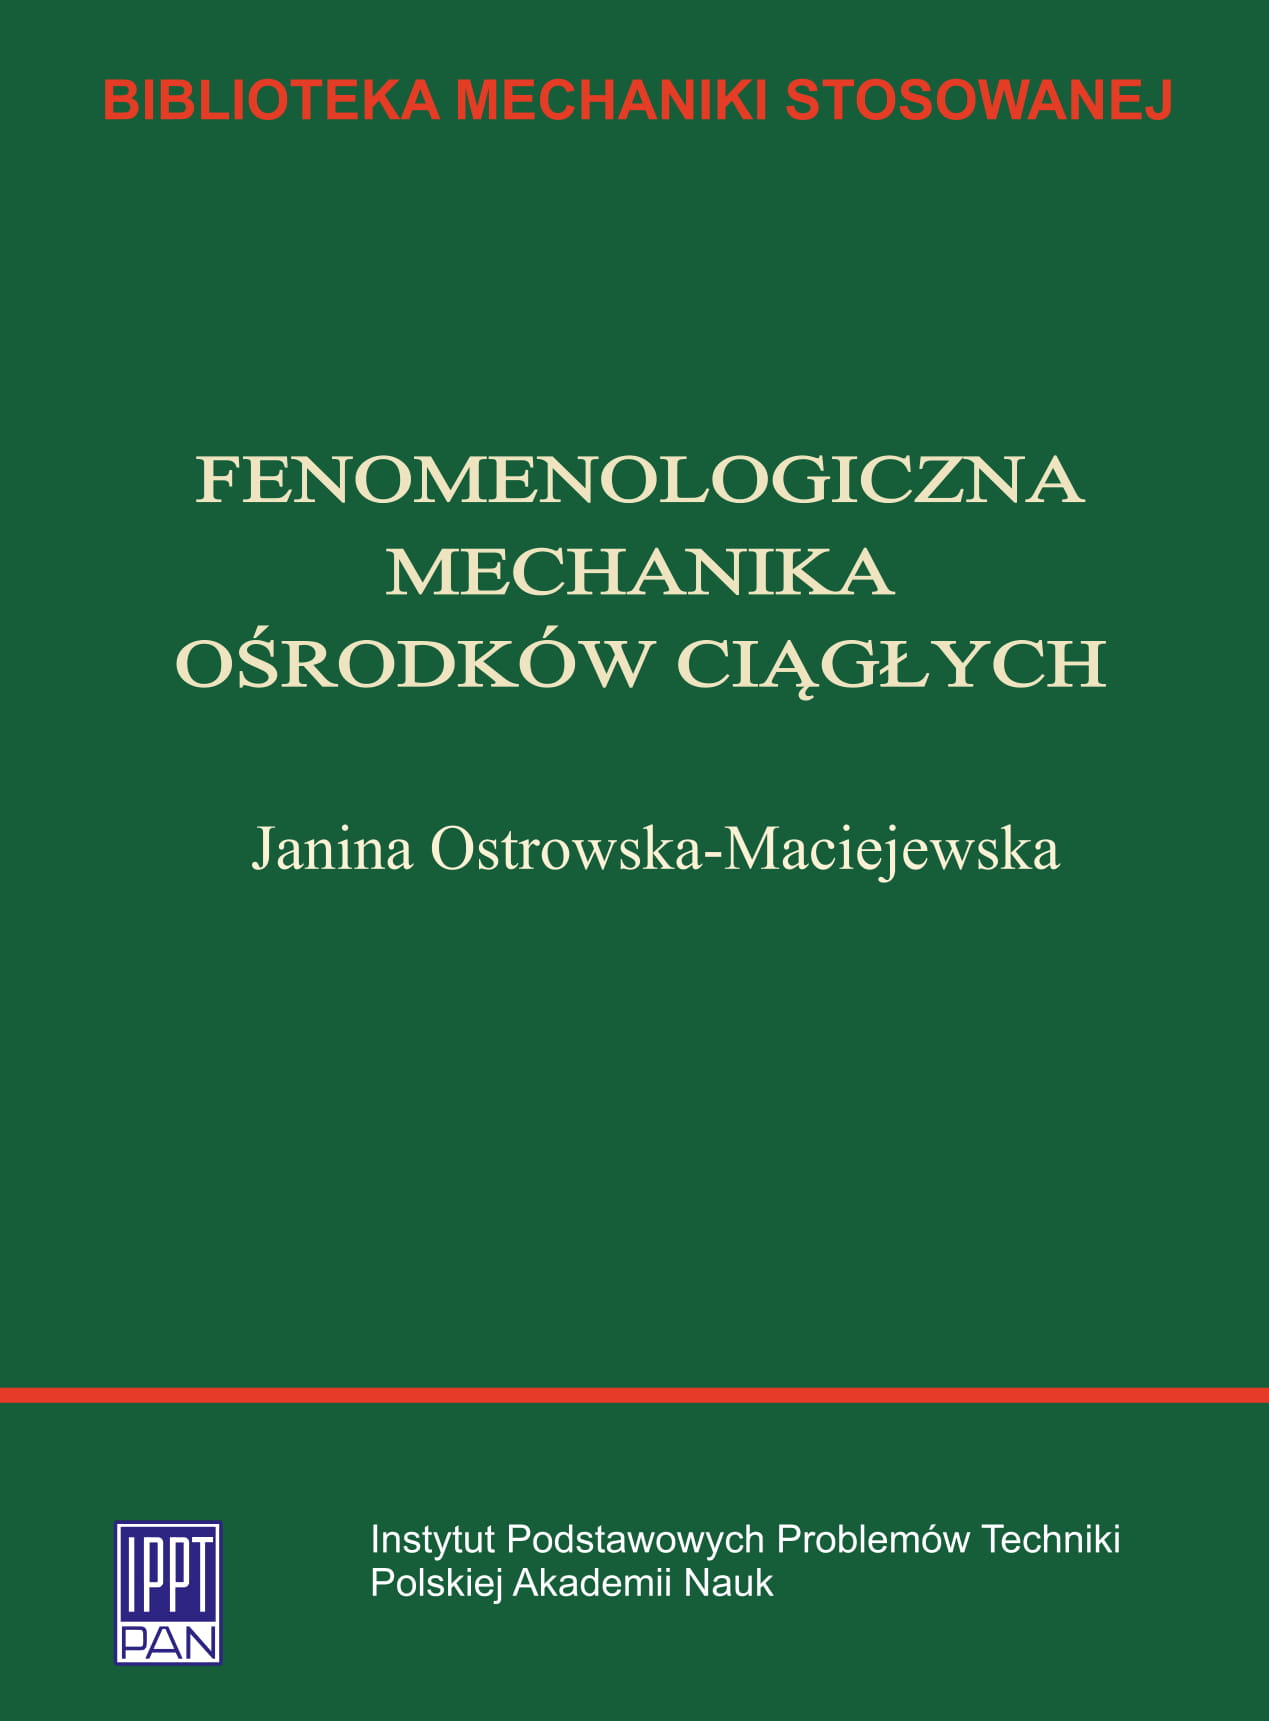 The Phenomenological Mechanics of Continuous Media<br />
(in Polish: Fenomenologiczna mechanika ośrodków ciągłych)